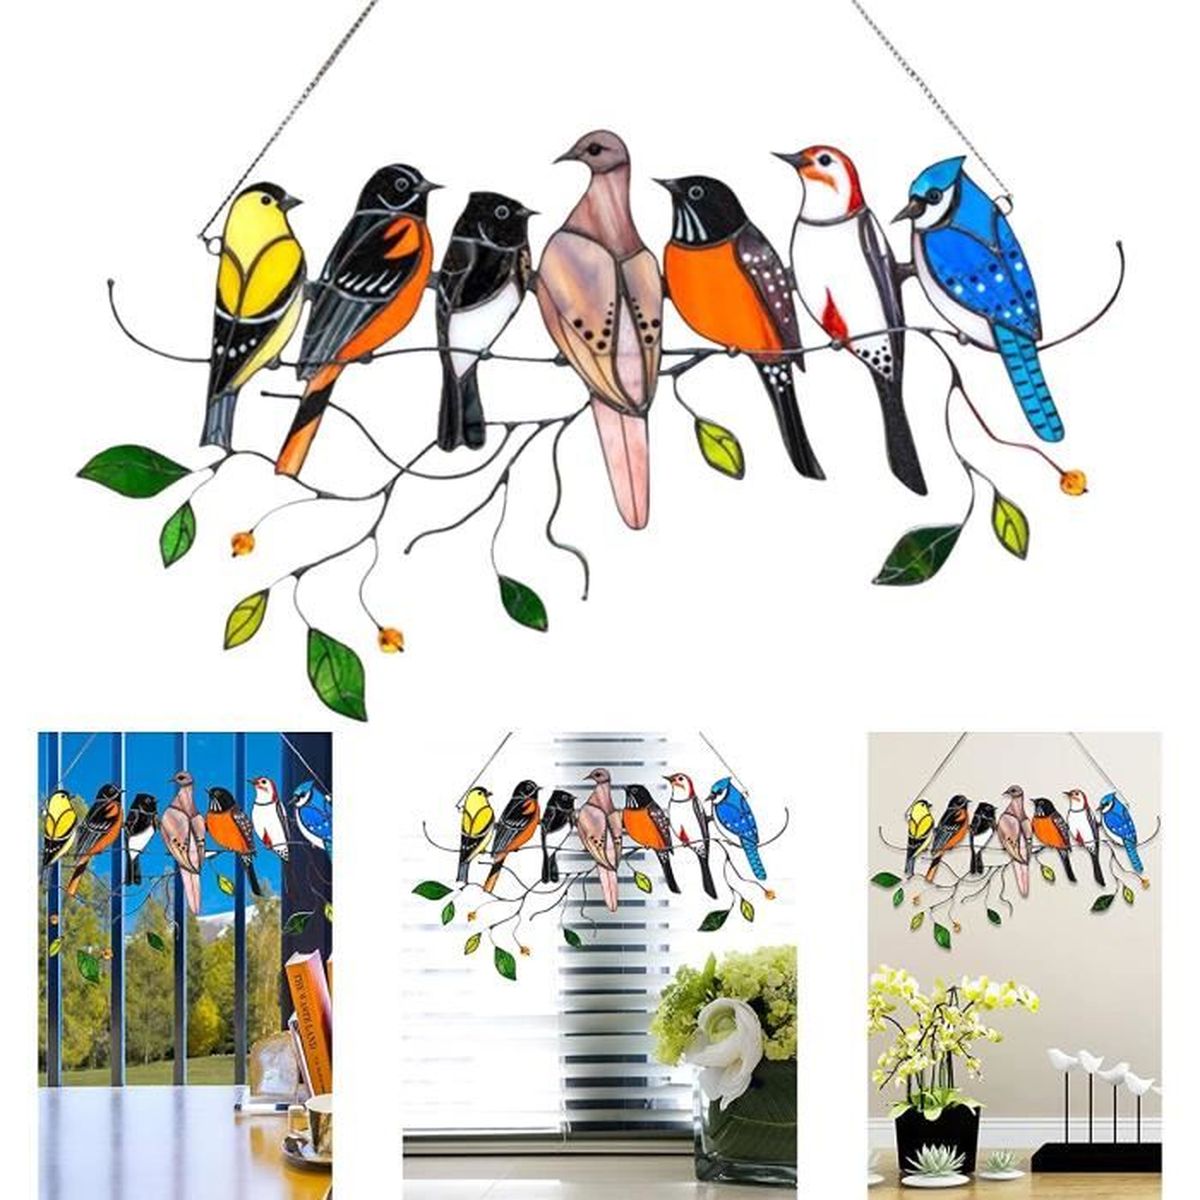 mur jardin porte Oiseau sur un panneau de fenêtre Série d/'oiseaux Décoration à suspendre pour fenêtre lefeindgdi Attrape-soleil en acrylique